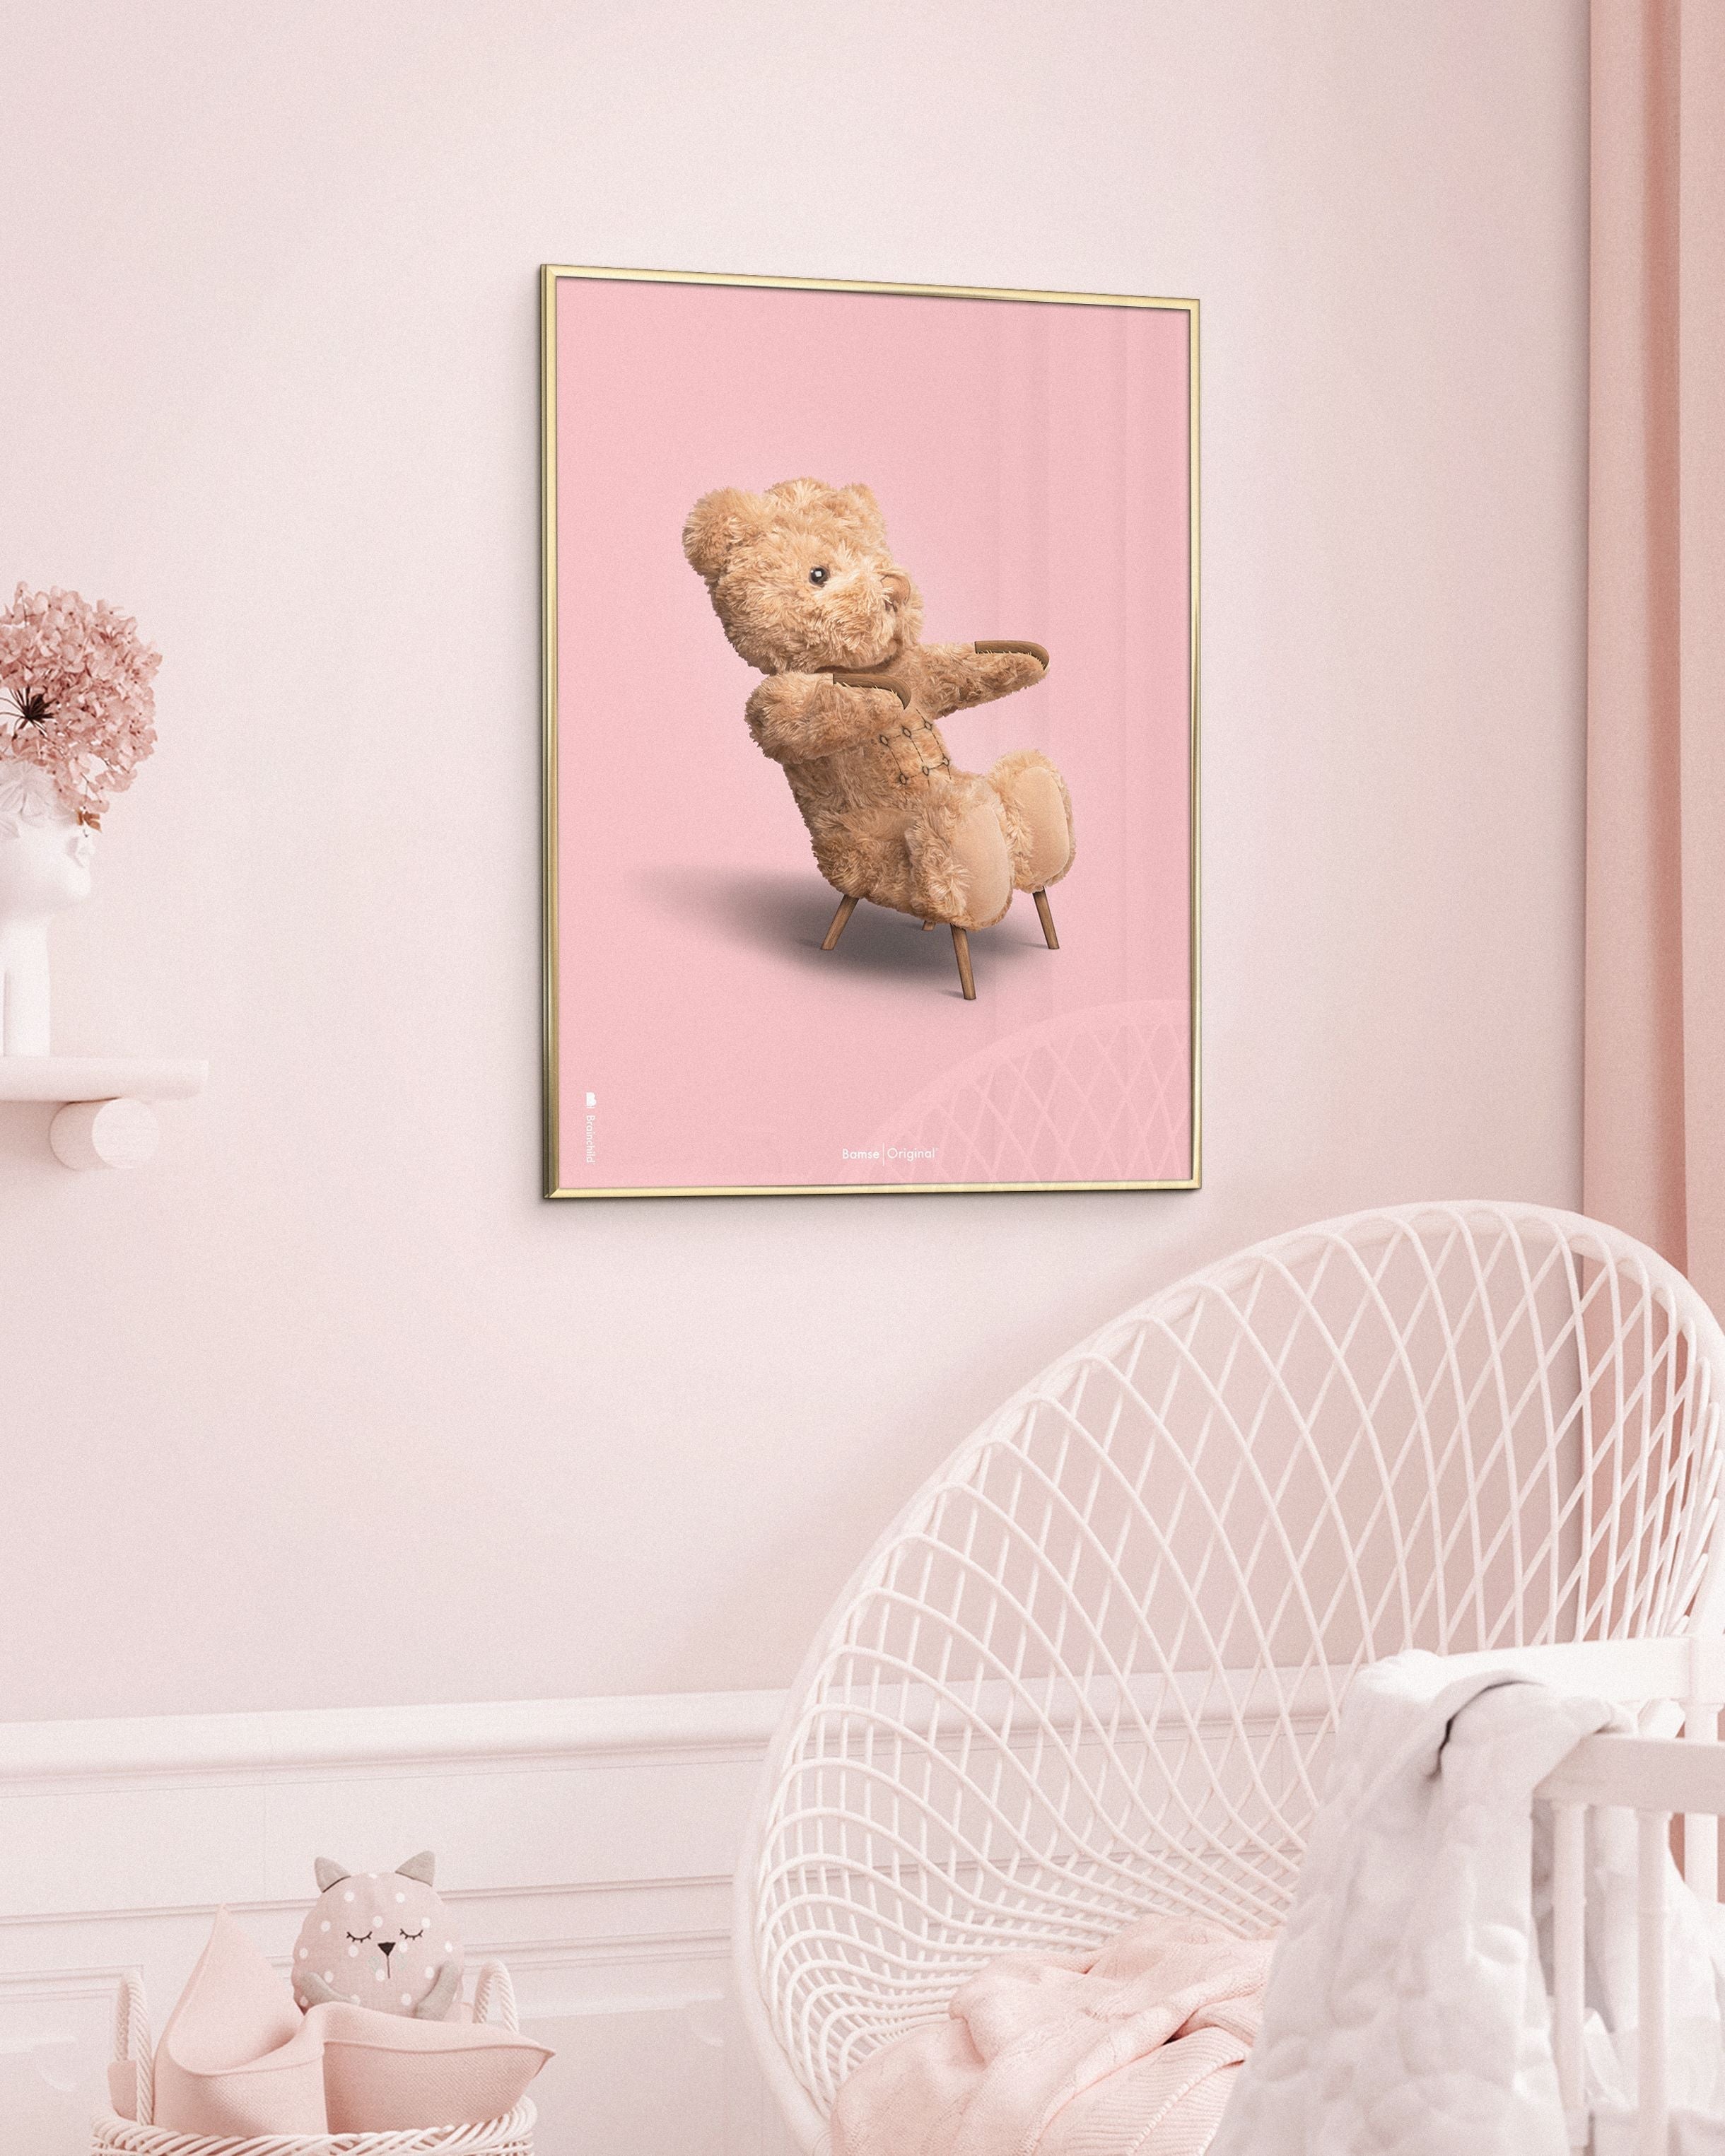 Brainchild Teddy Bear Classic Poster uten ramme 70x100 cm, rosa bakgrunn